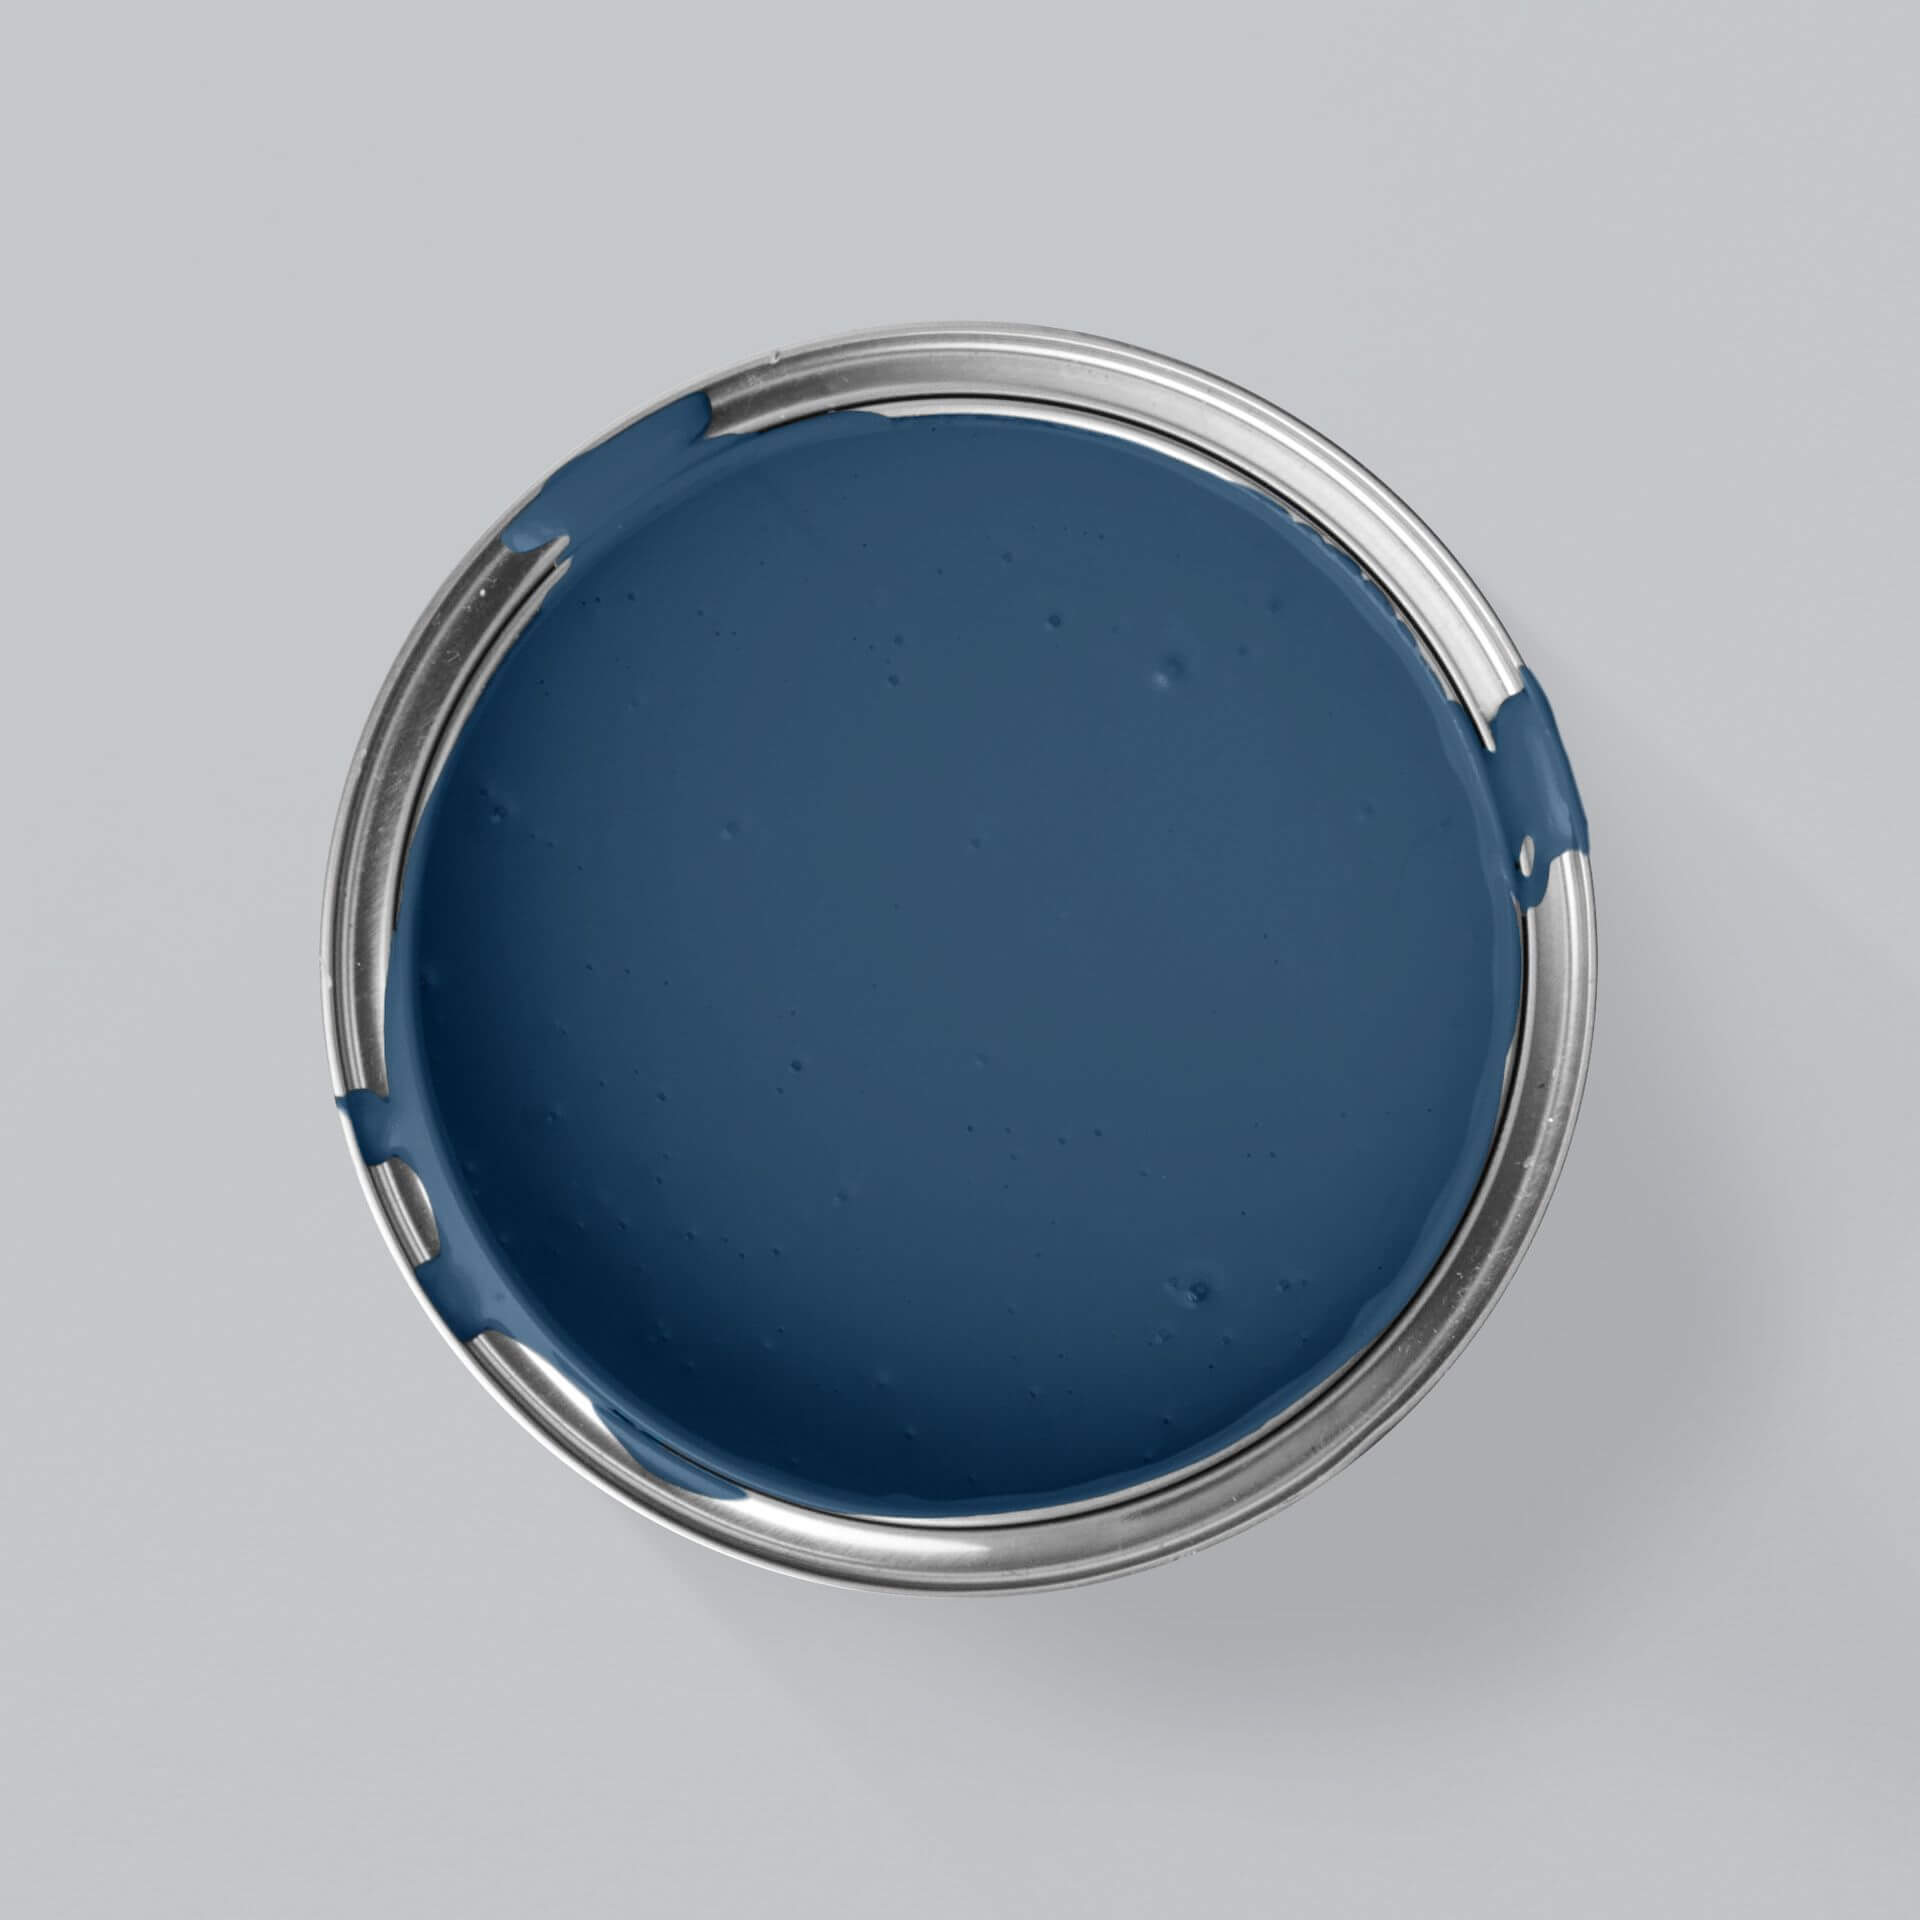 MissPompadour Blauw met Nacht - Afwasbare muurverf 2.5L